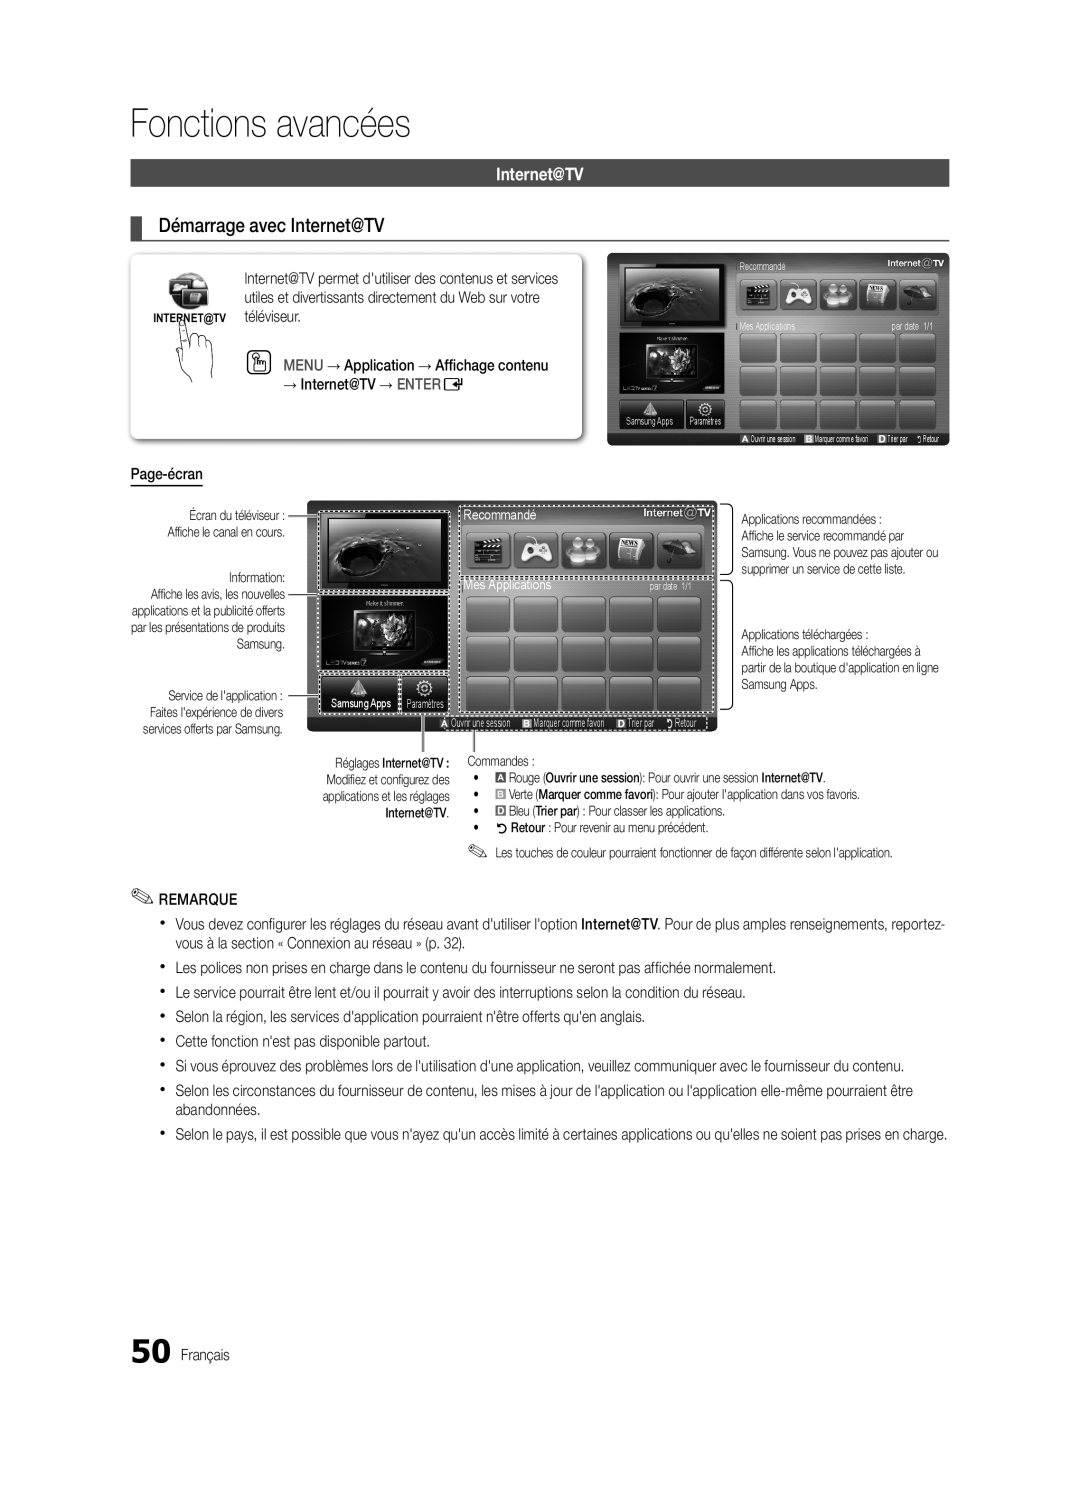 Samsung BN68-03088A-01, Series C9 user manual Démarrage avec Internet@TV, Fonctions avancées 